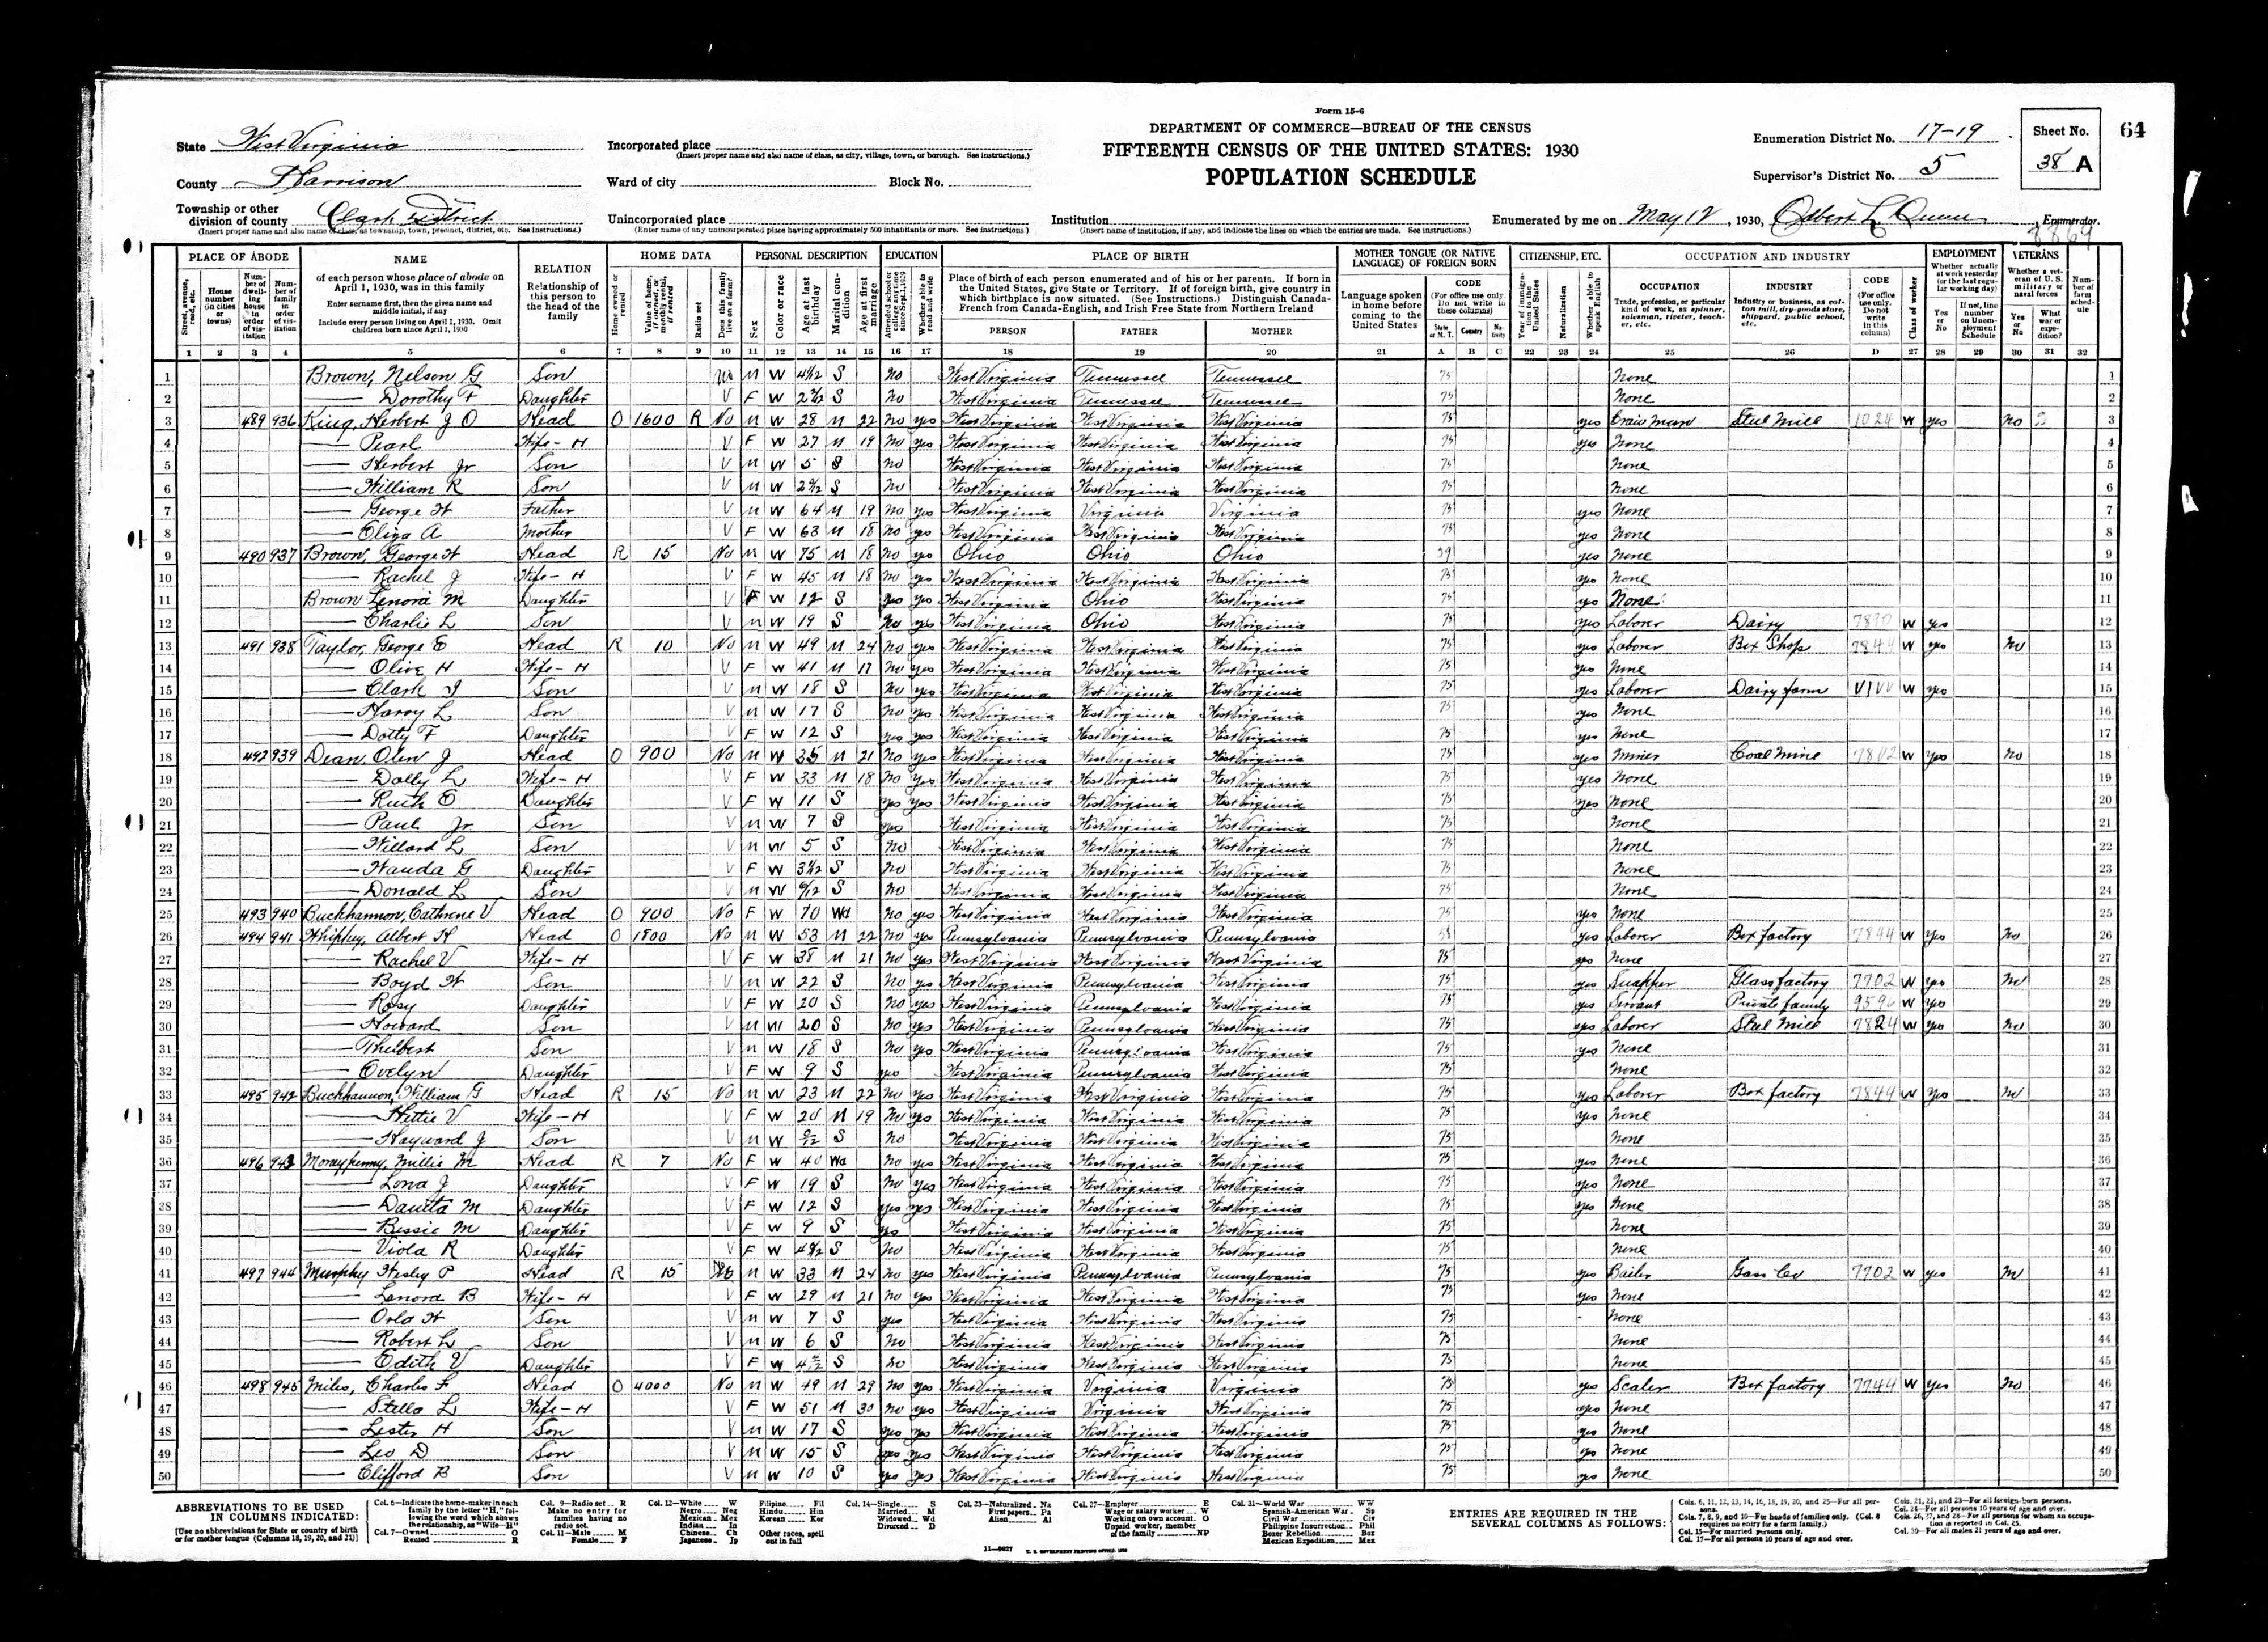 1930 US Census, William King, line 6